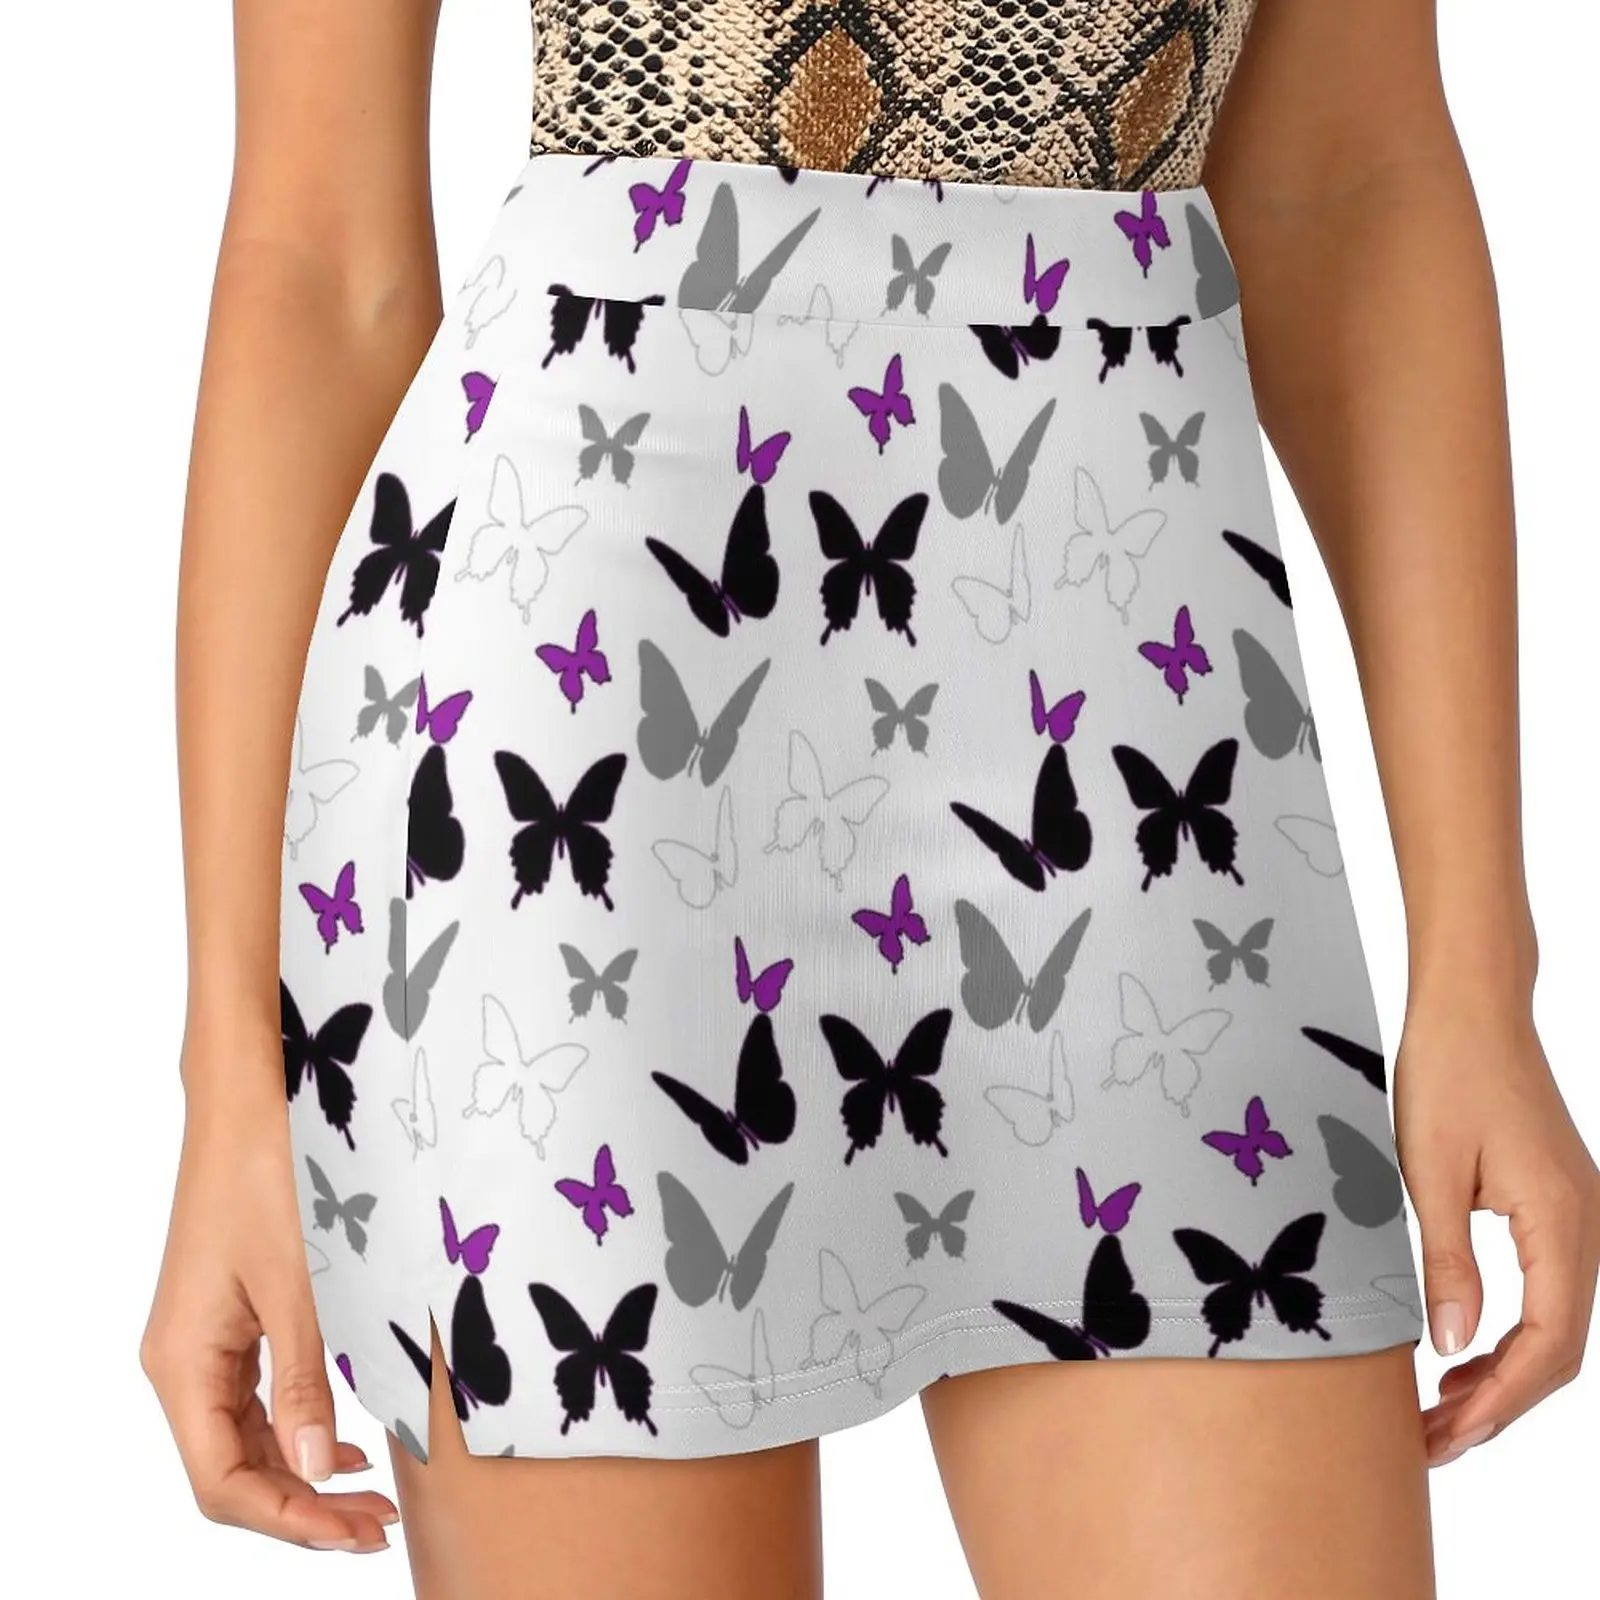 

Ace Butterflies Light proof trouser skirt cute skirt Sexy mini skirt Short skirts novelty in clothes